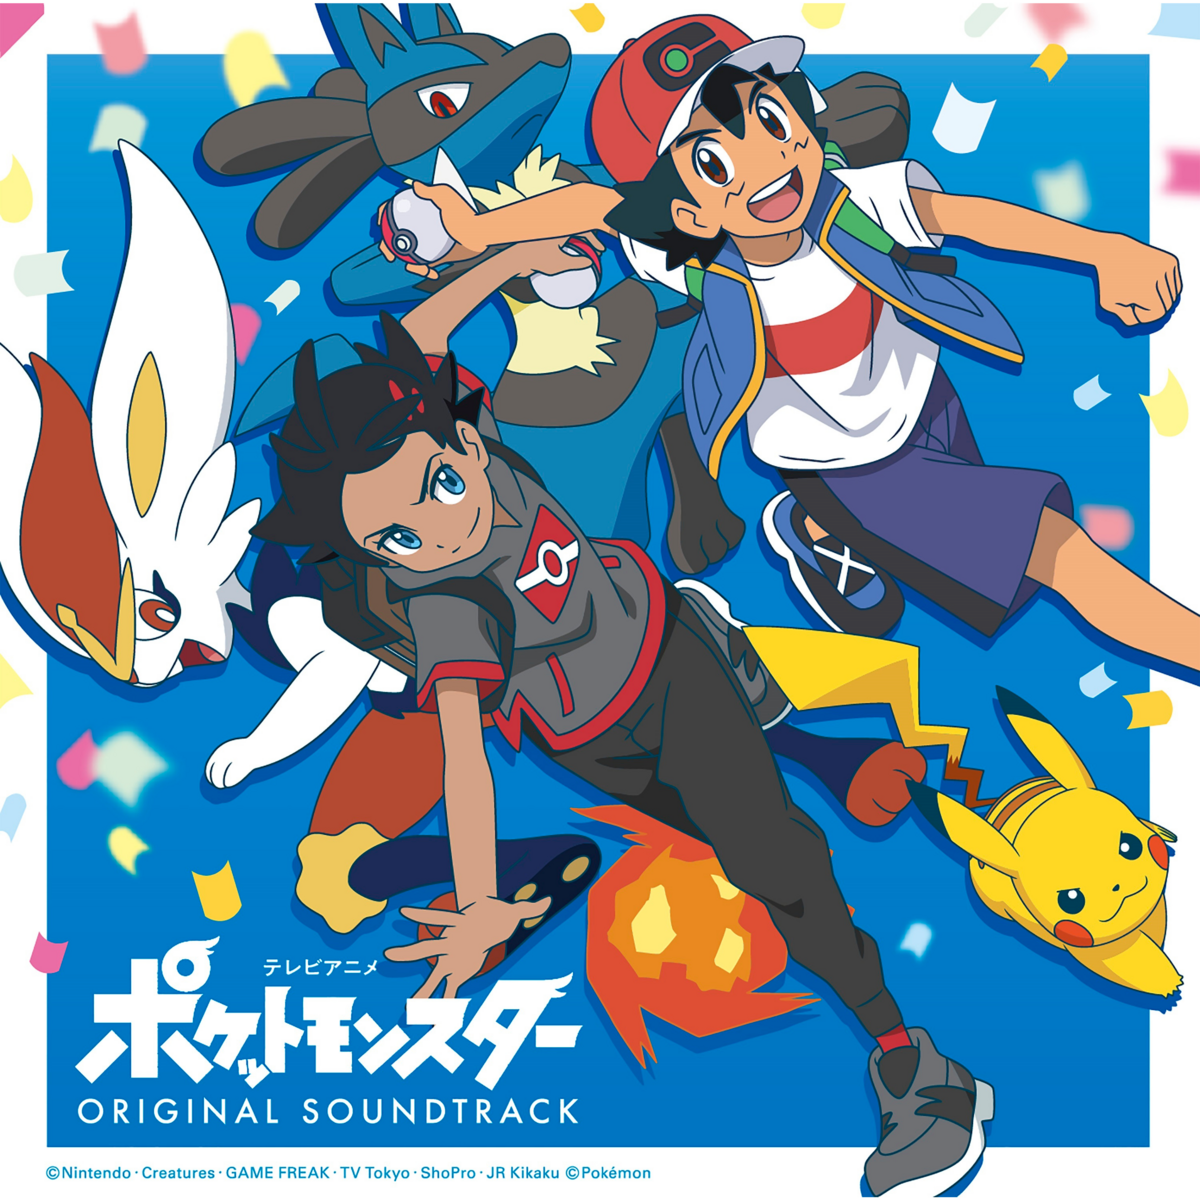 Pocket Monster Pokemon The Origin DVD A3 Poster Japan Anime